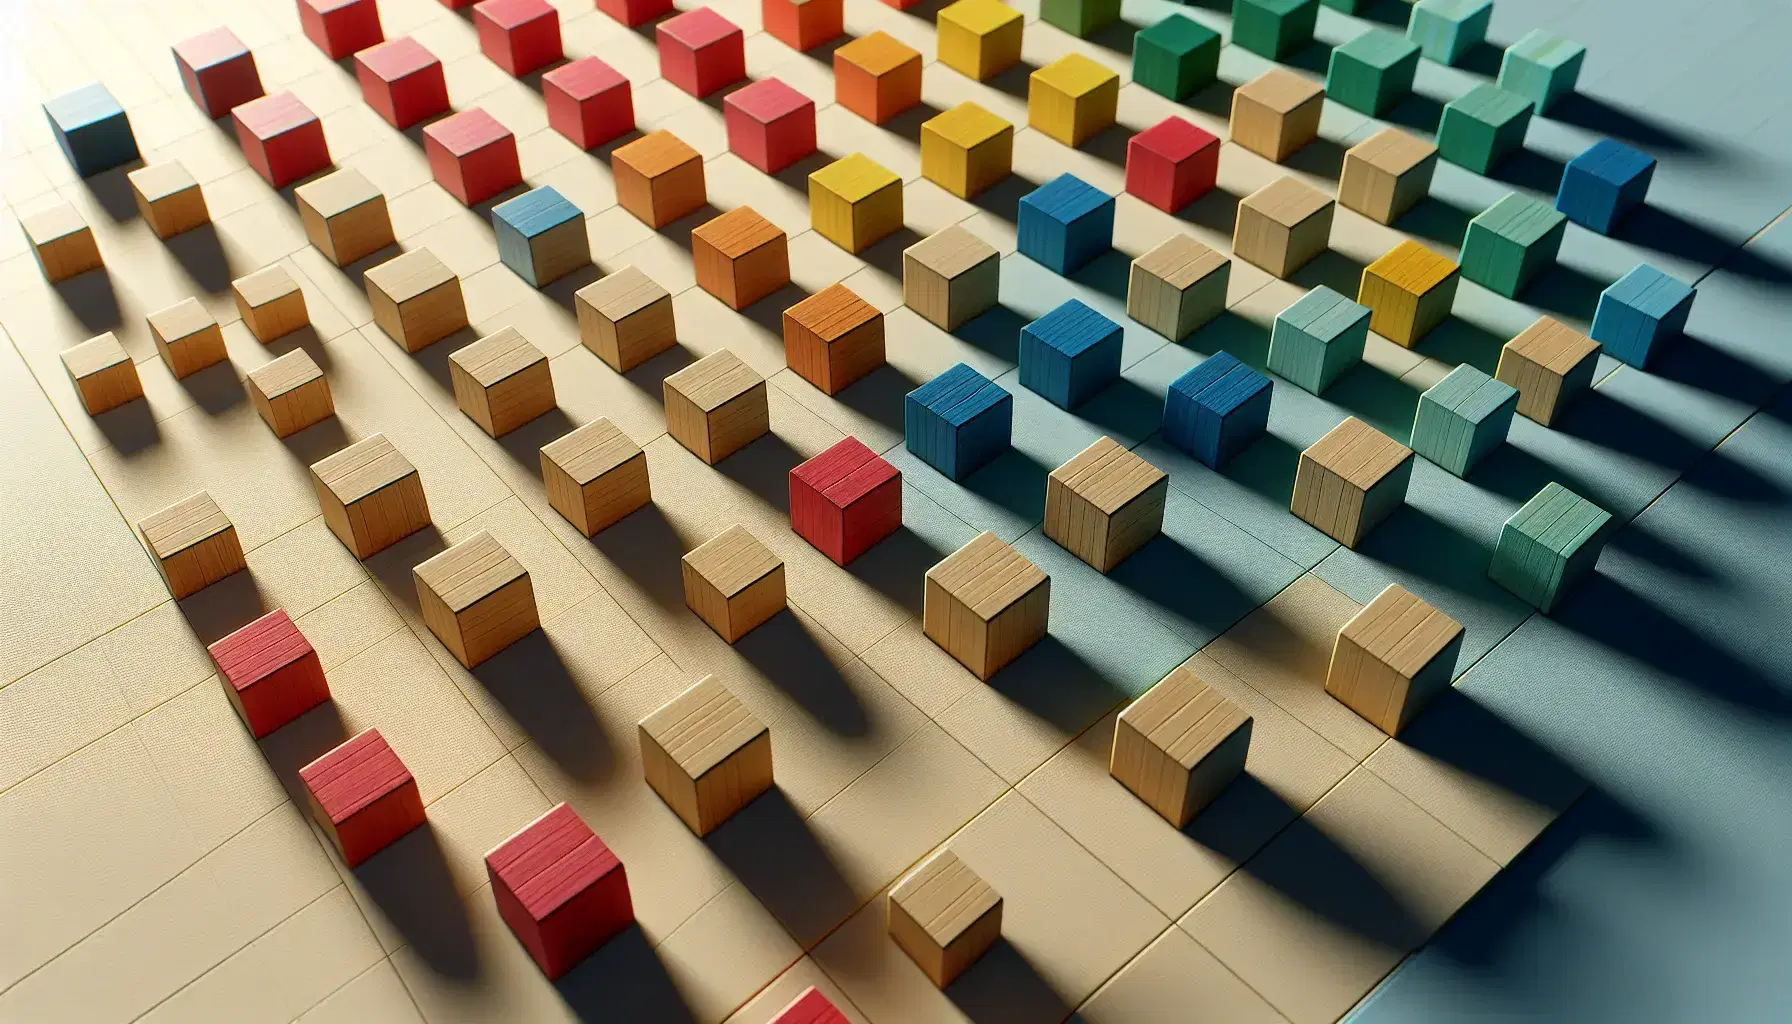 Bloques de madera en colores rojo, azul, verde y amarillo dispuestos en una cuadrícula 5x5 sin colores repetidos en filas o columnas.